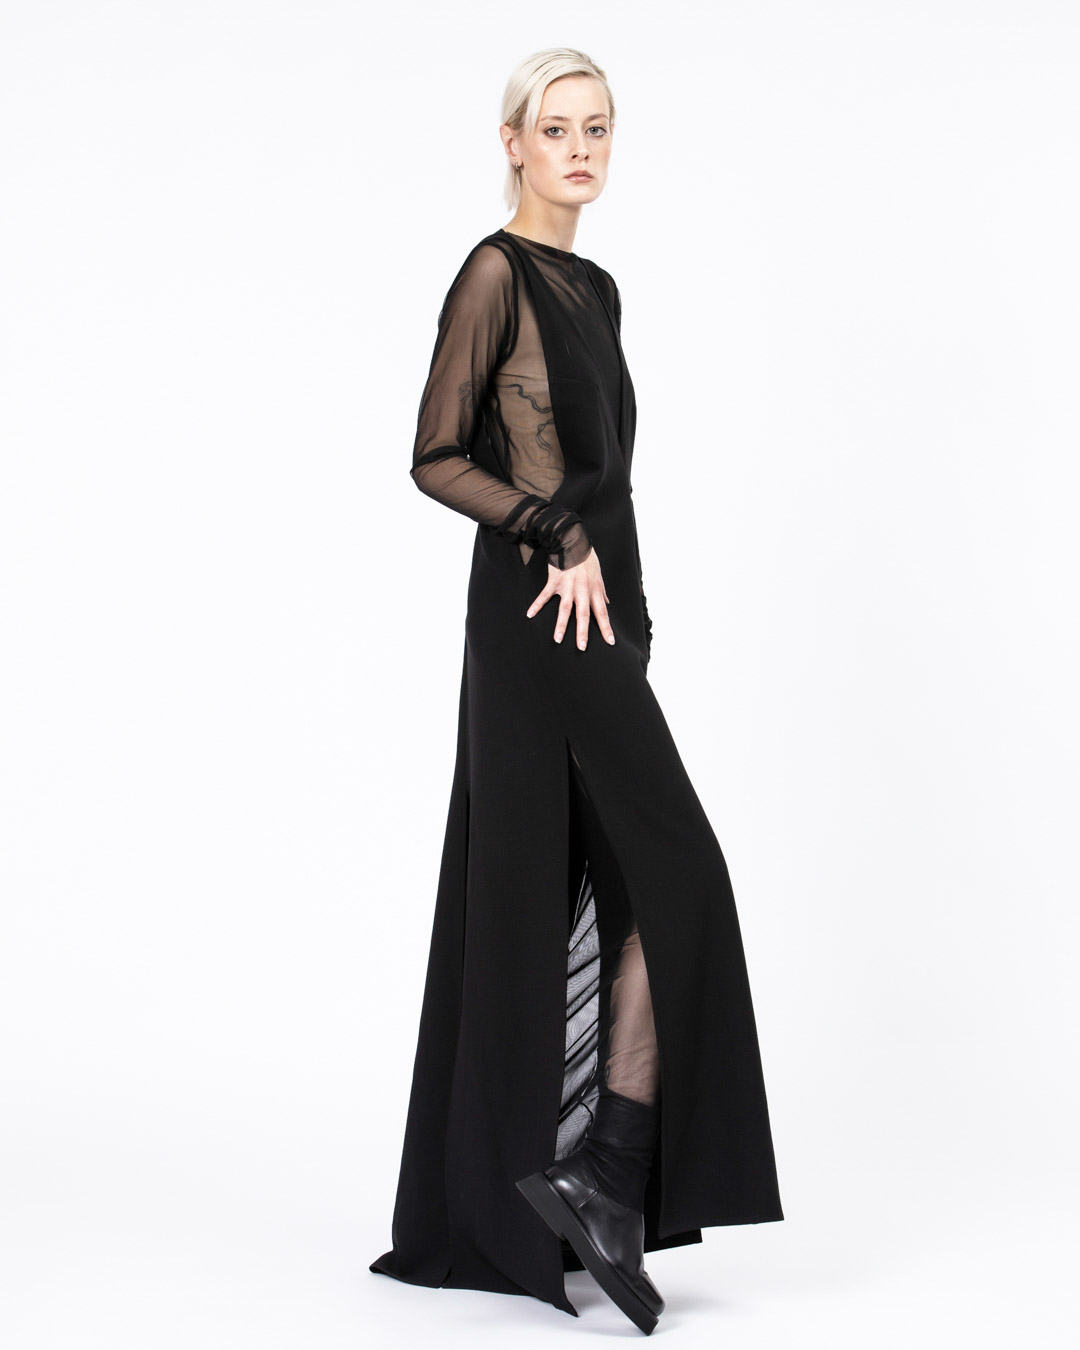 botki damskie na platformie kolekcja APIA Officine Creative sukienka PUDU Joanna Weyna